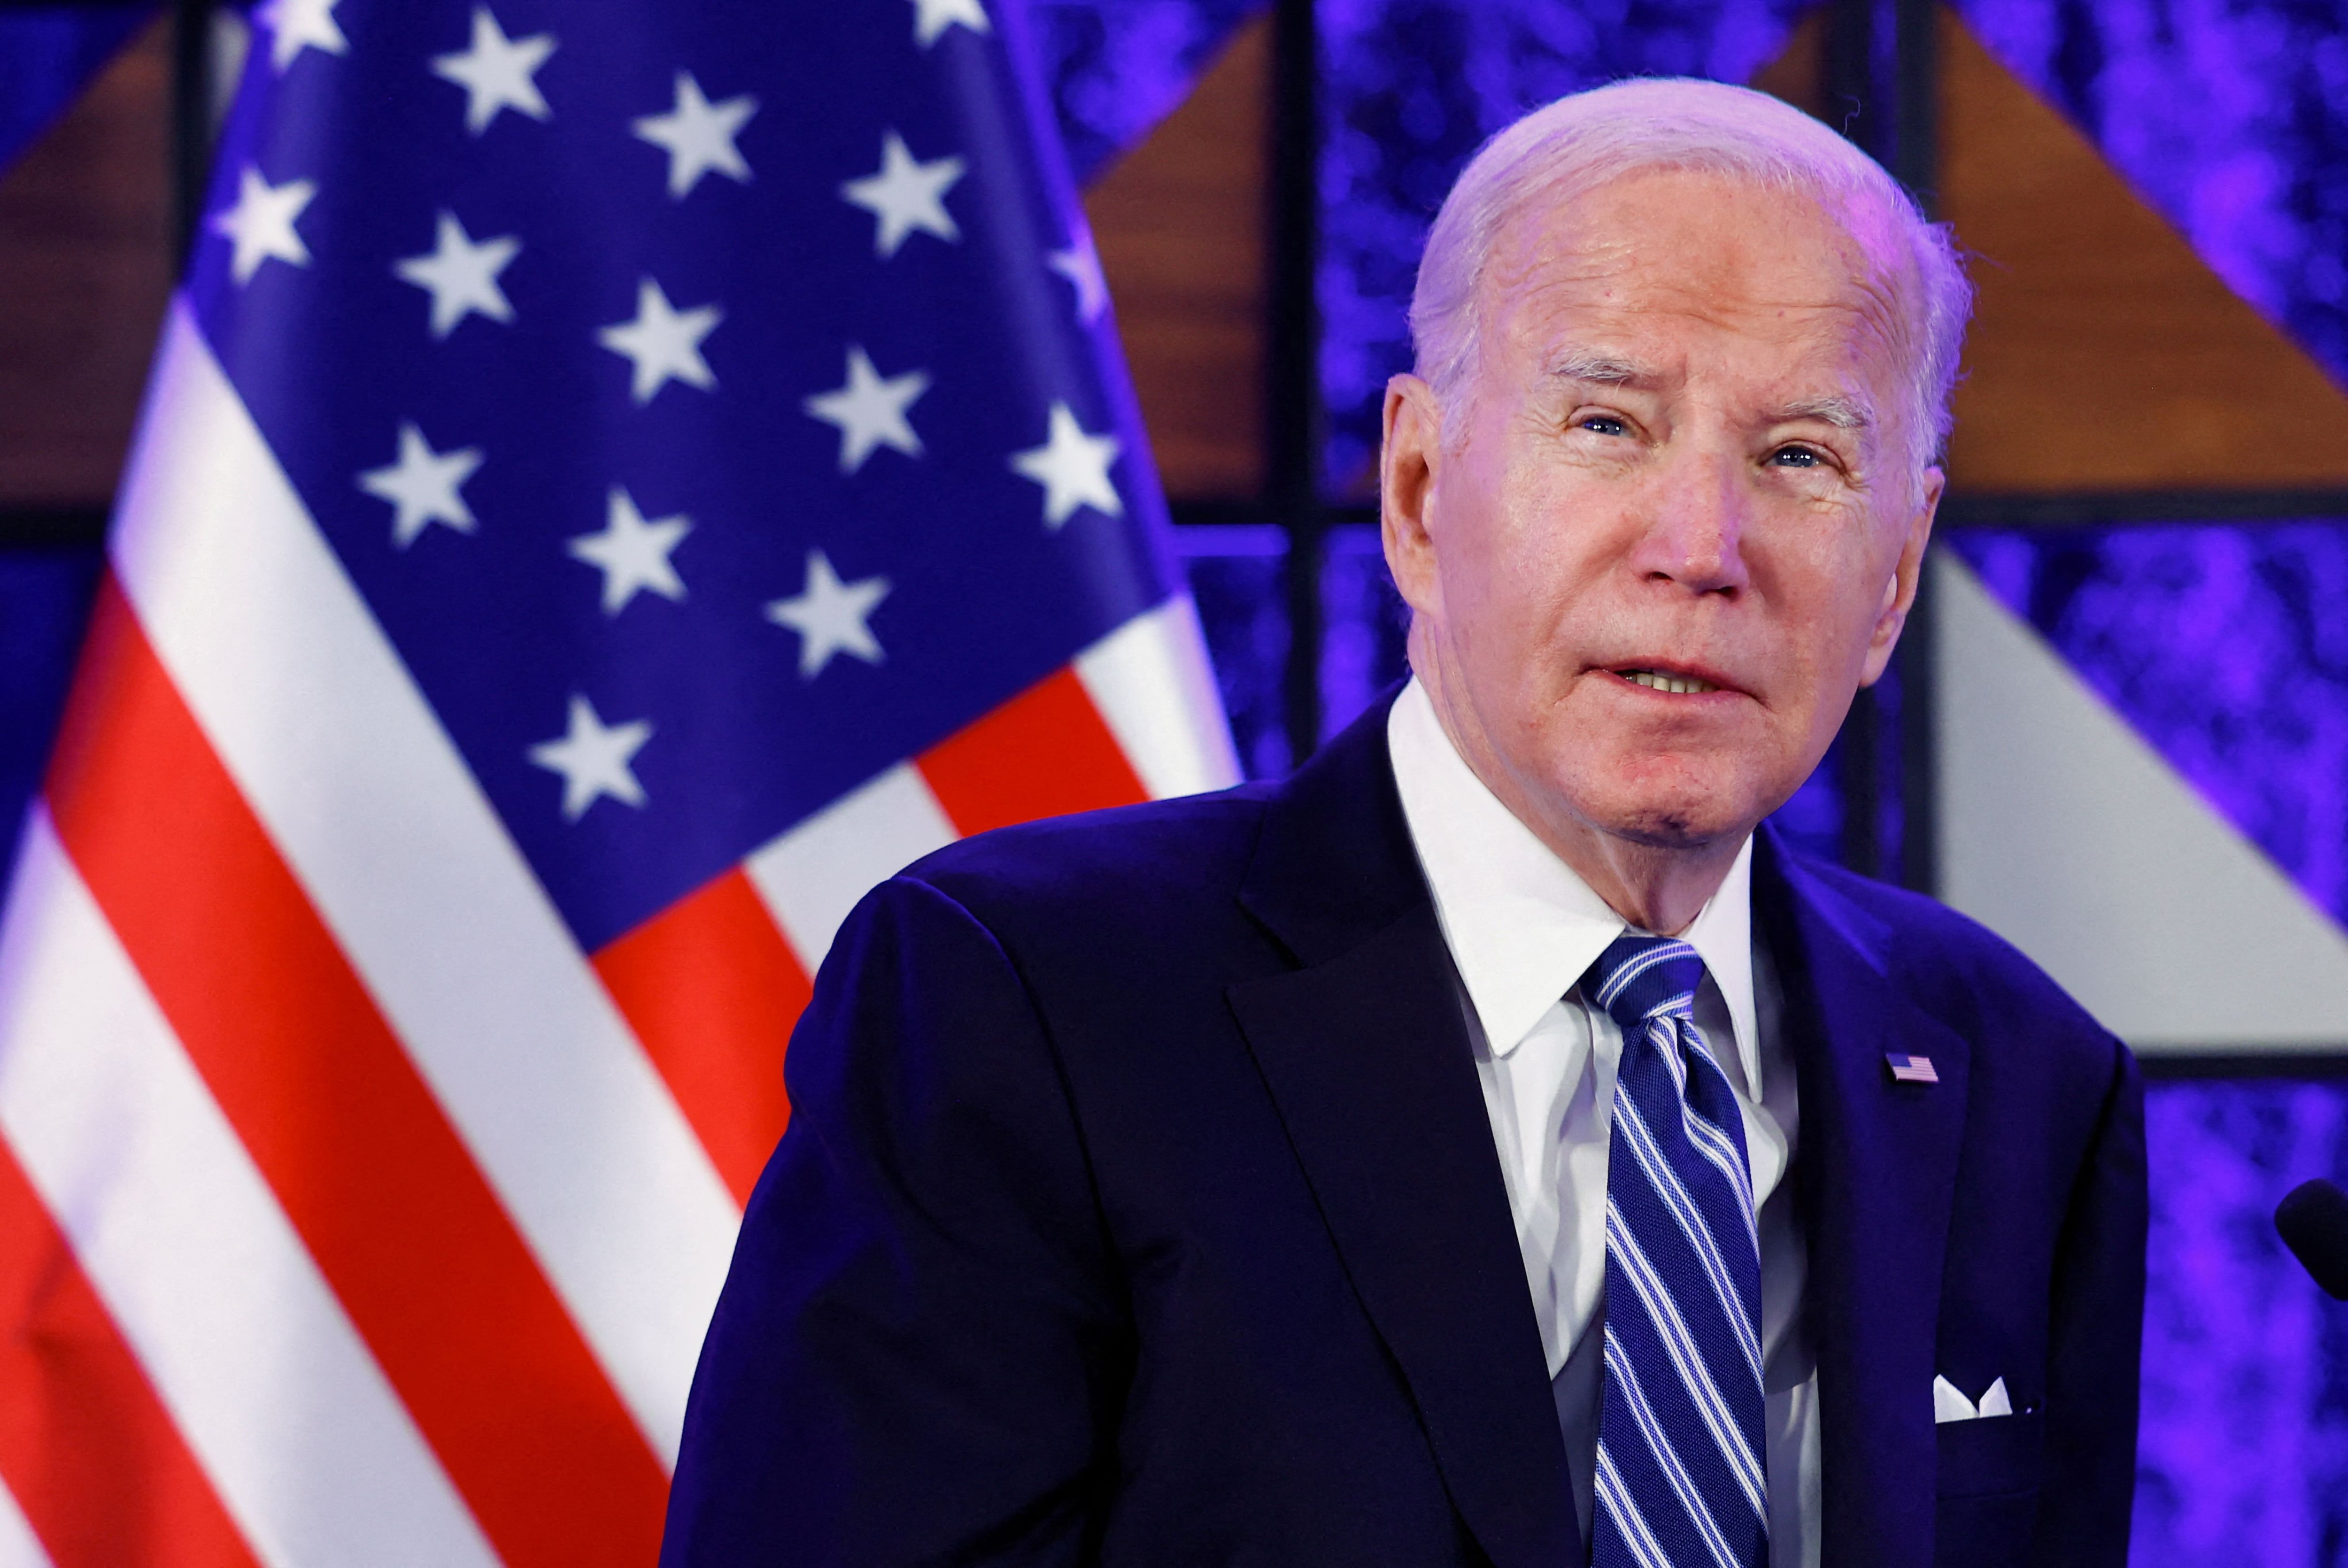 "Es una situación debilitante", dijo Biden en 2020. “Y todavía de vez en cuando, cuando me siento muy cansado, me sorprendo tartamudeando" (REUTERS/Evelyn Hockstein/File Photo